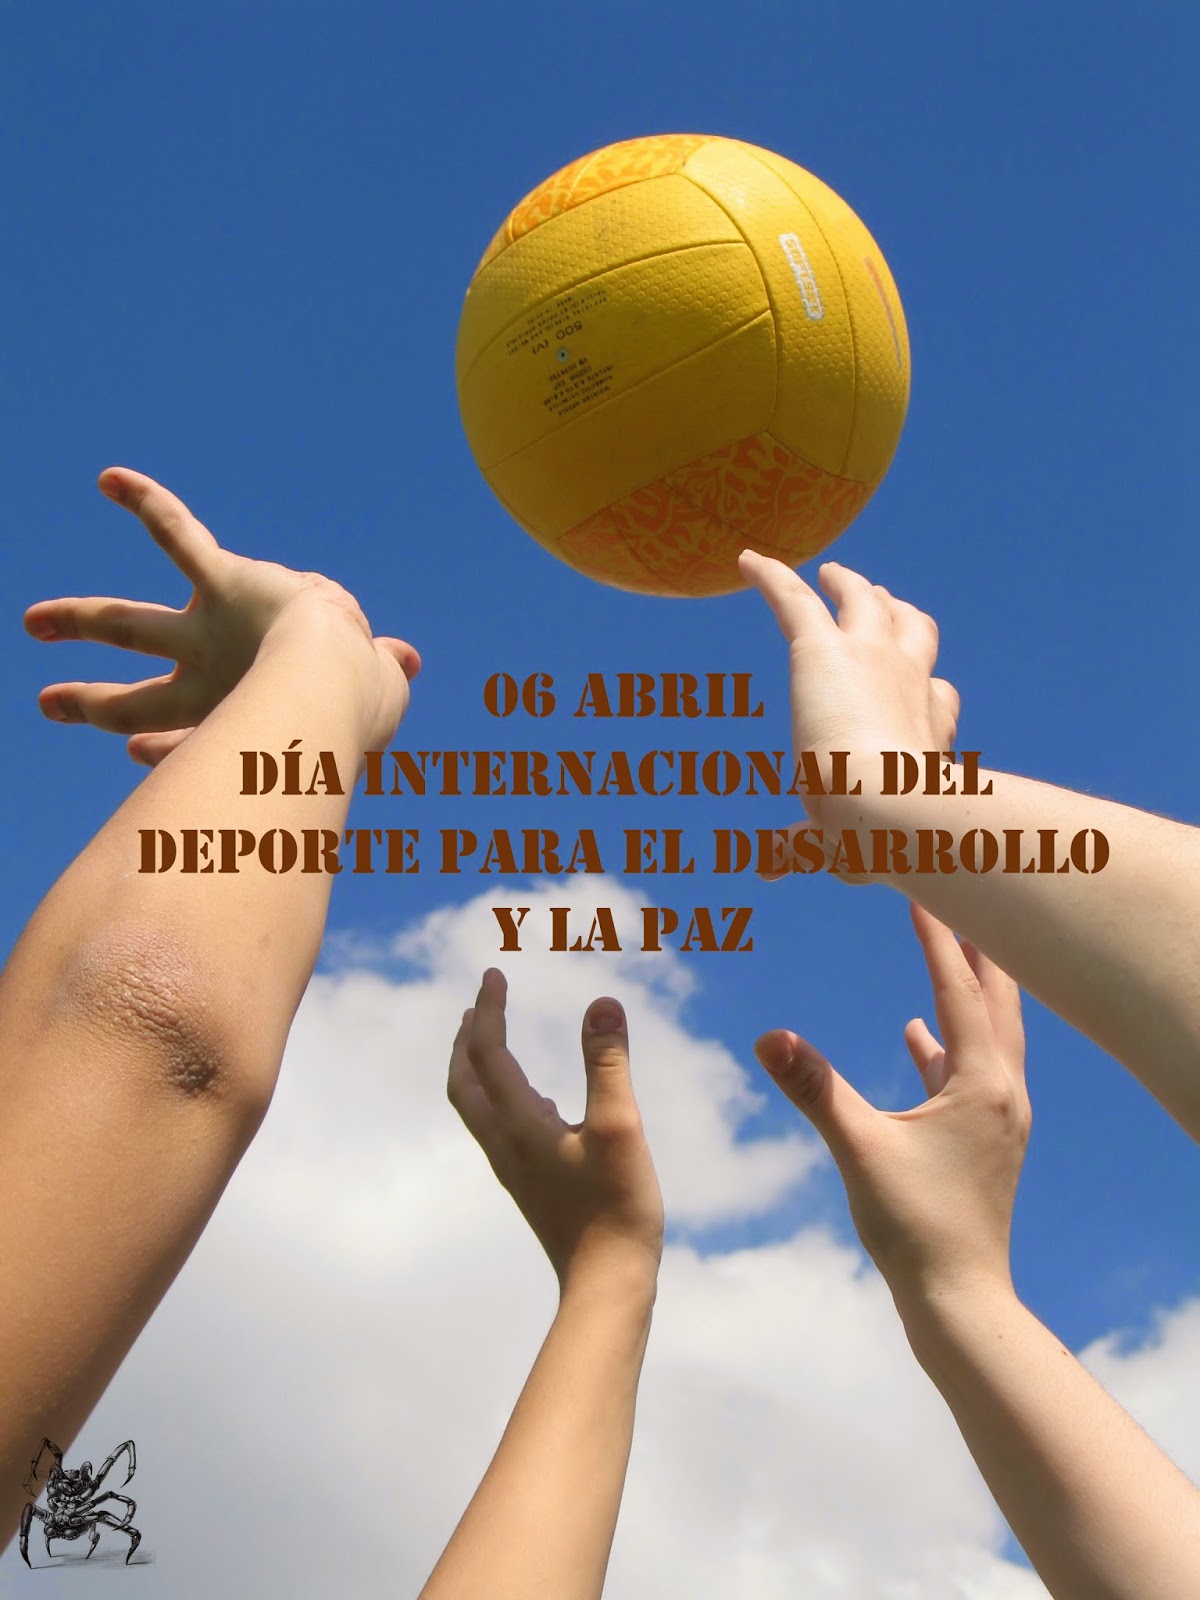 Dia Internacional del deporte para el desarrollo y la paz